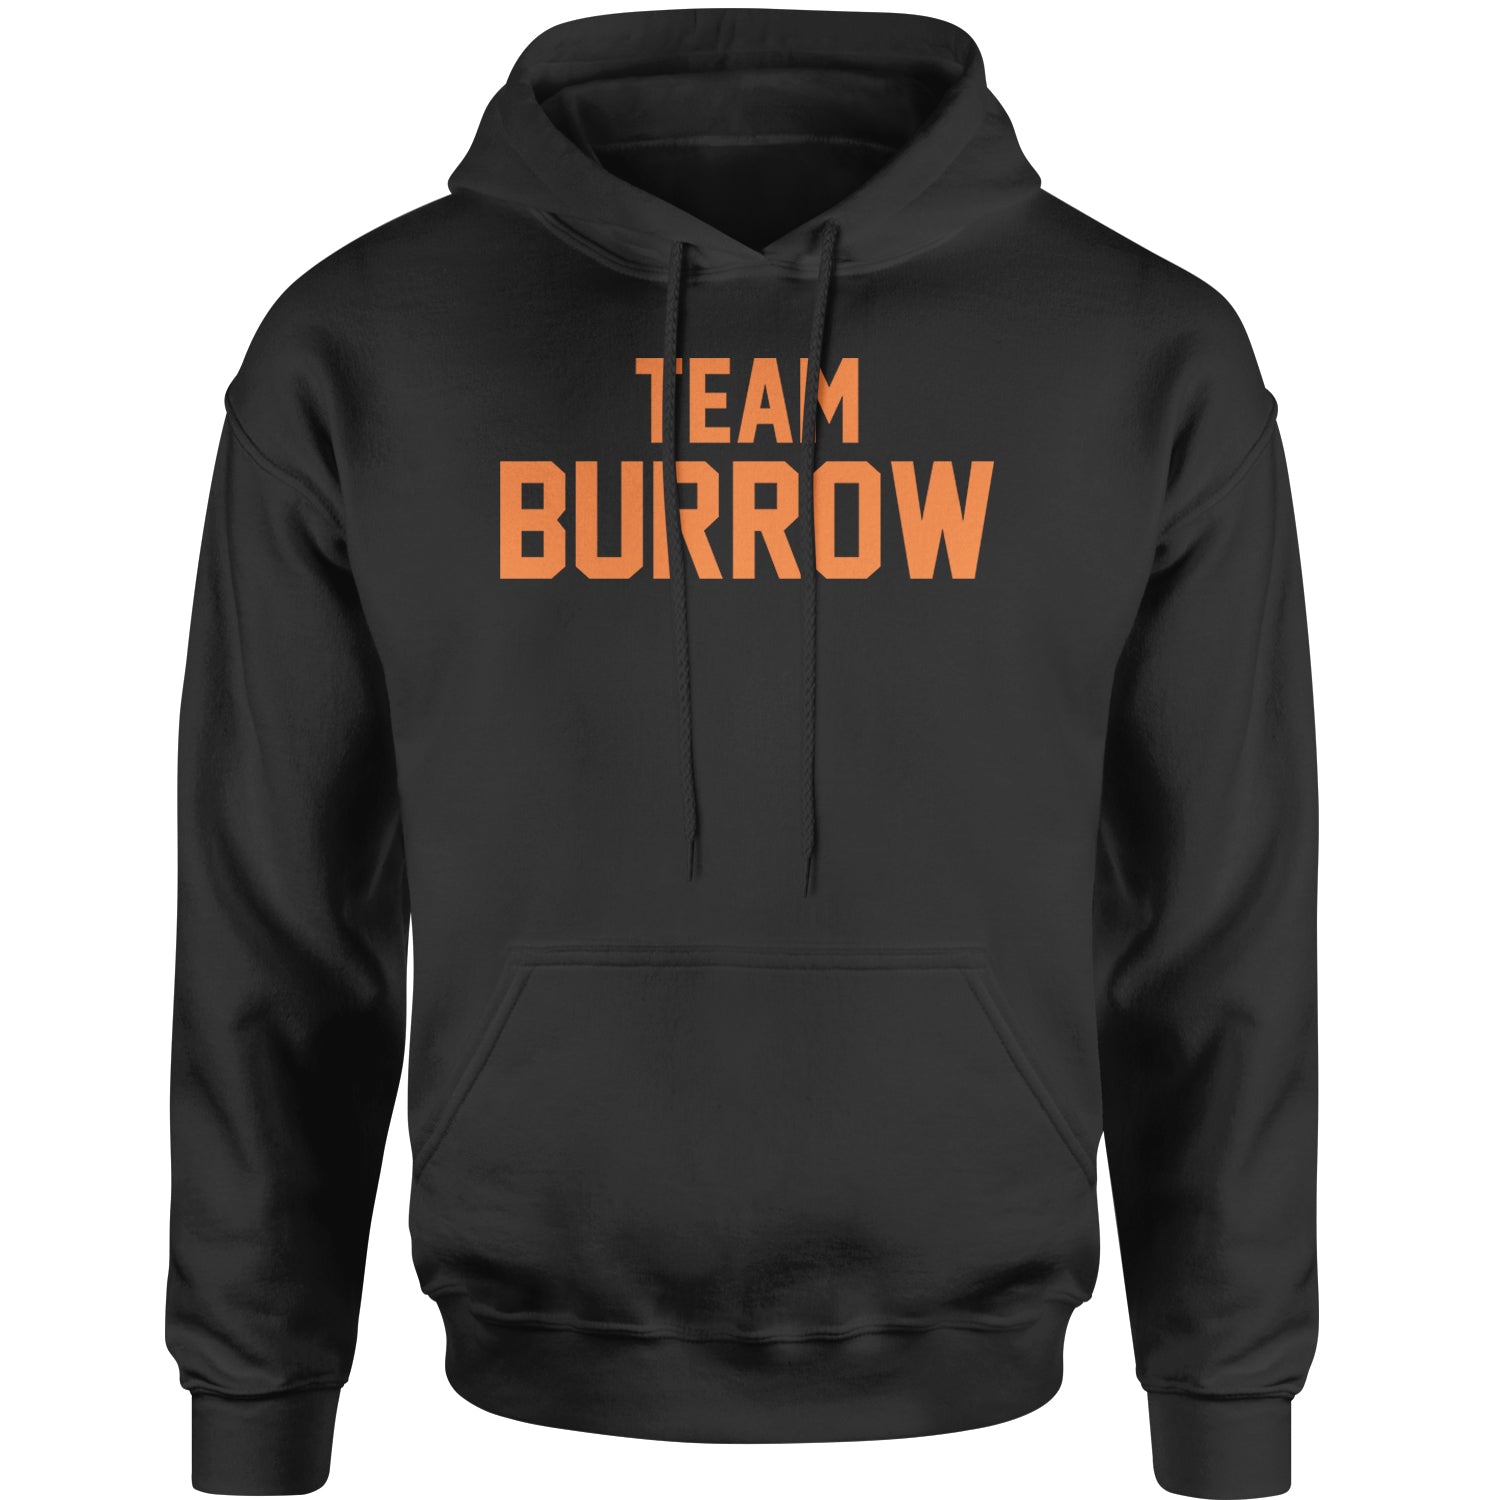 Team Burrow Cincinnati Adult Hoodie Sweatshirt